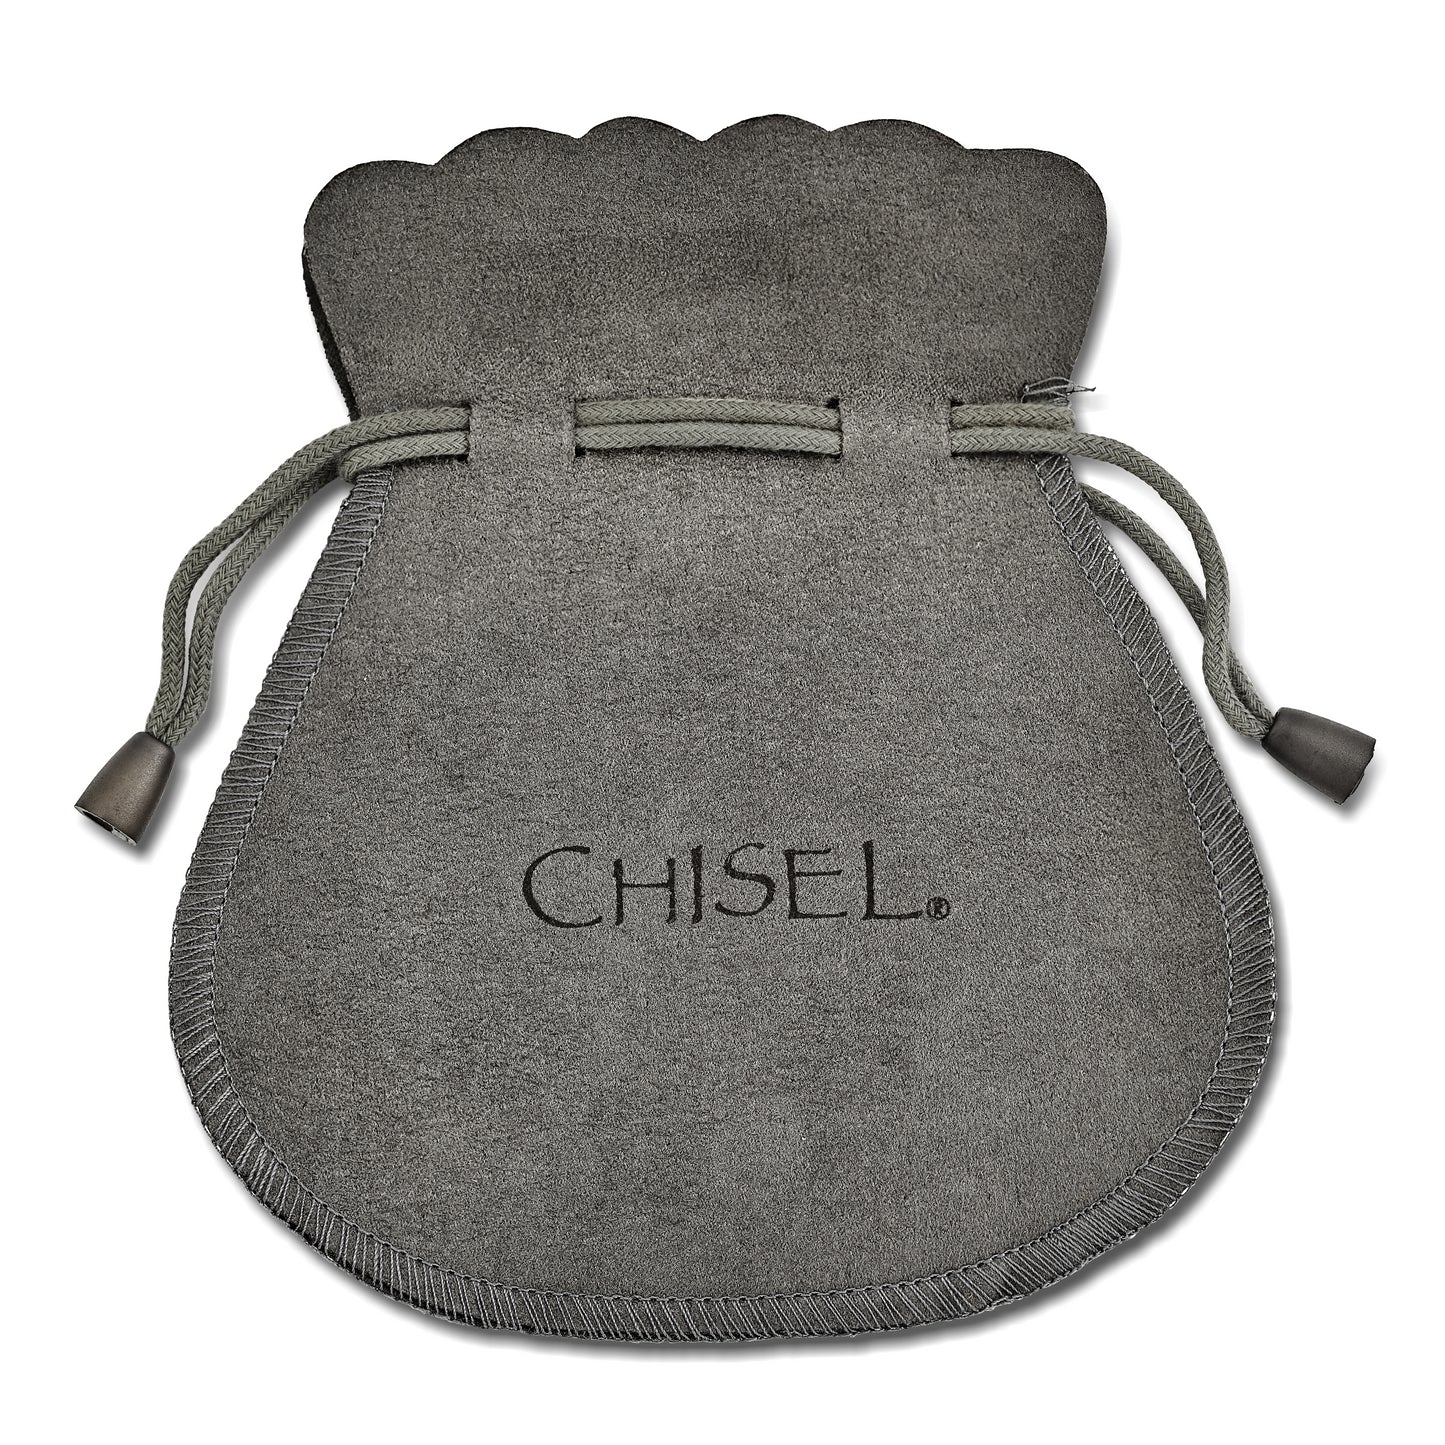 Chisel Stainless Steel Polished 30mm Diameter 2mm Oval Hoop Earrings